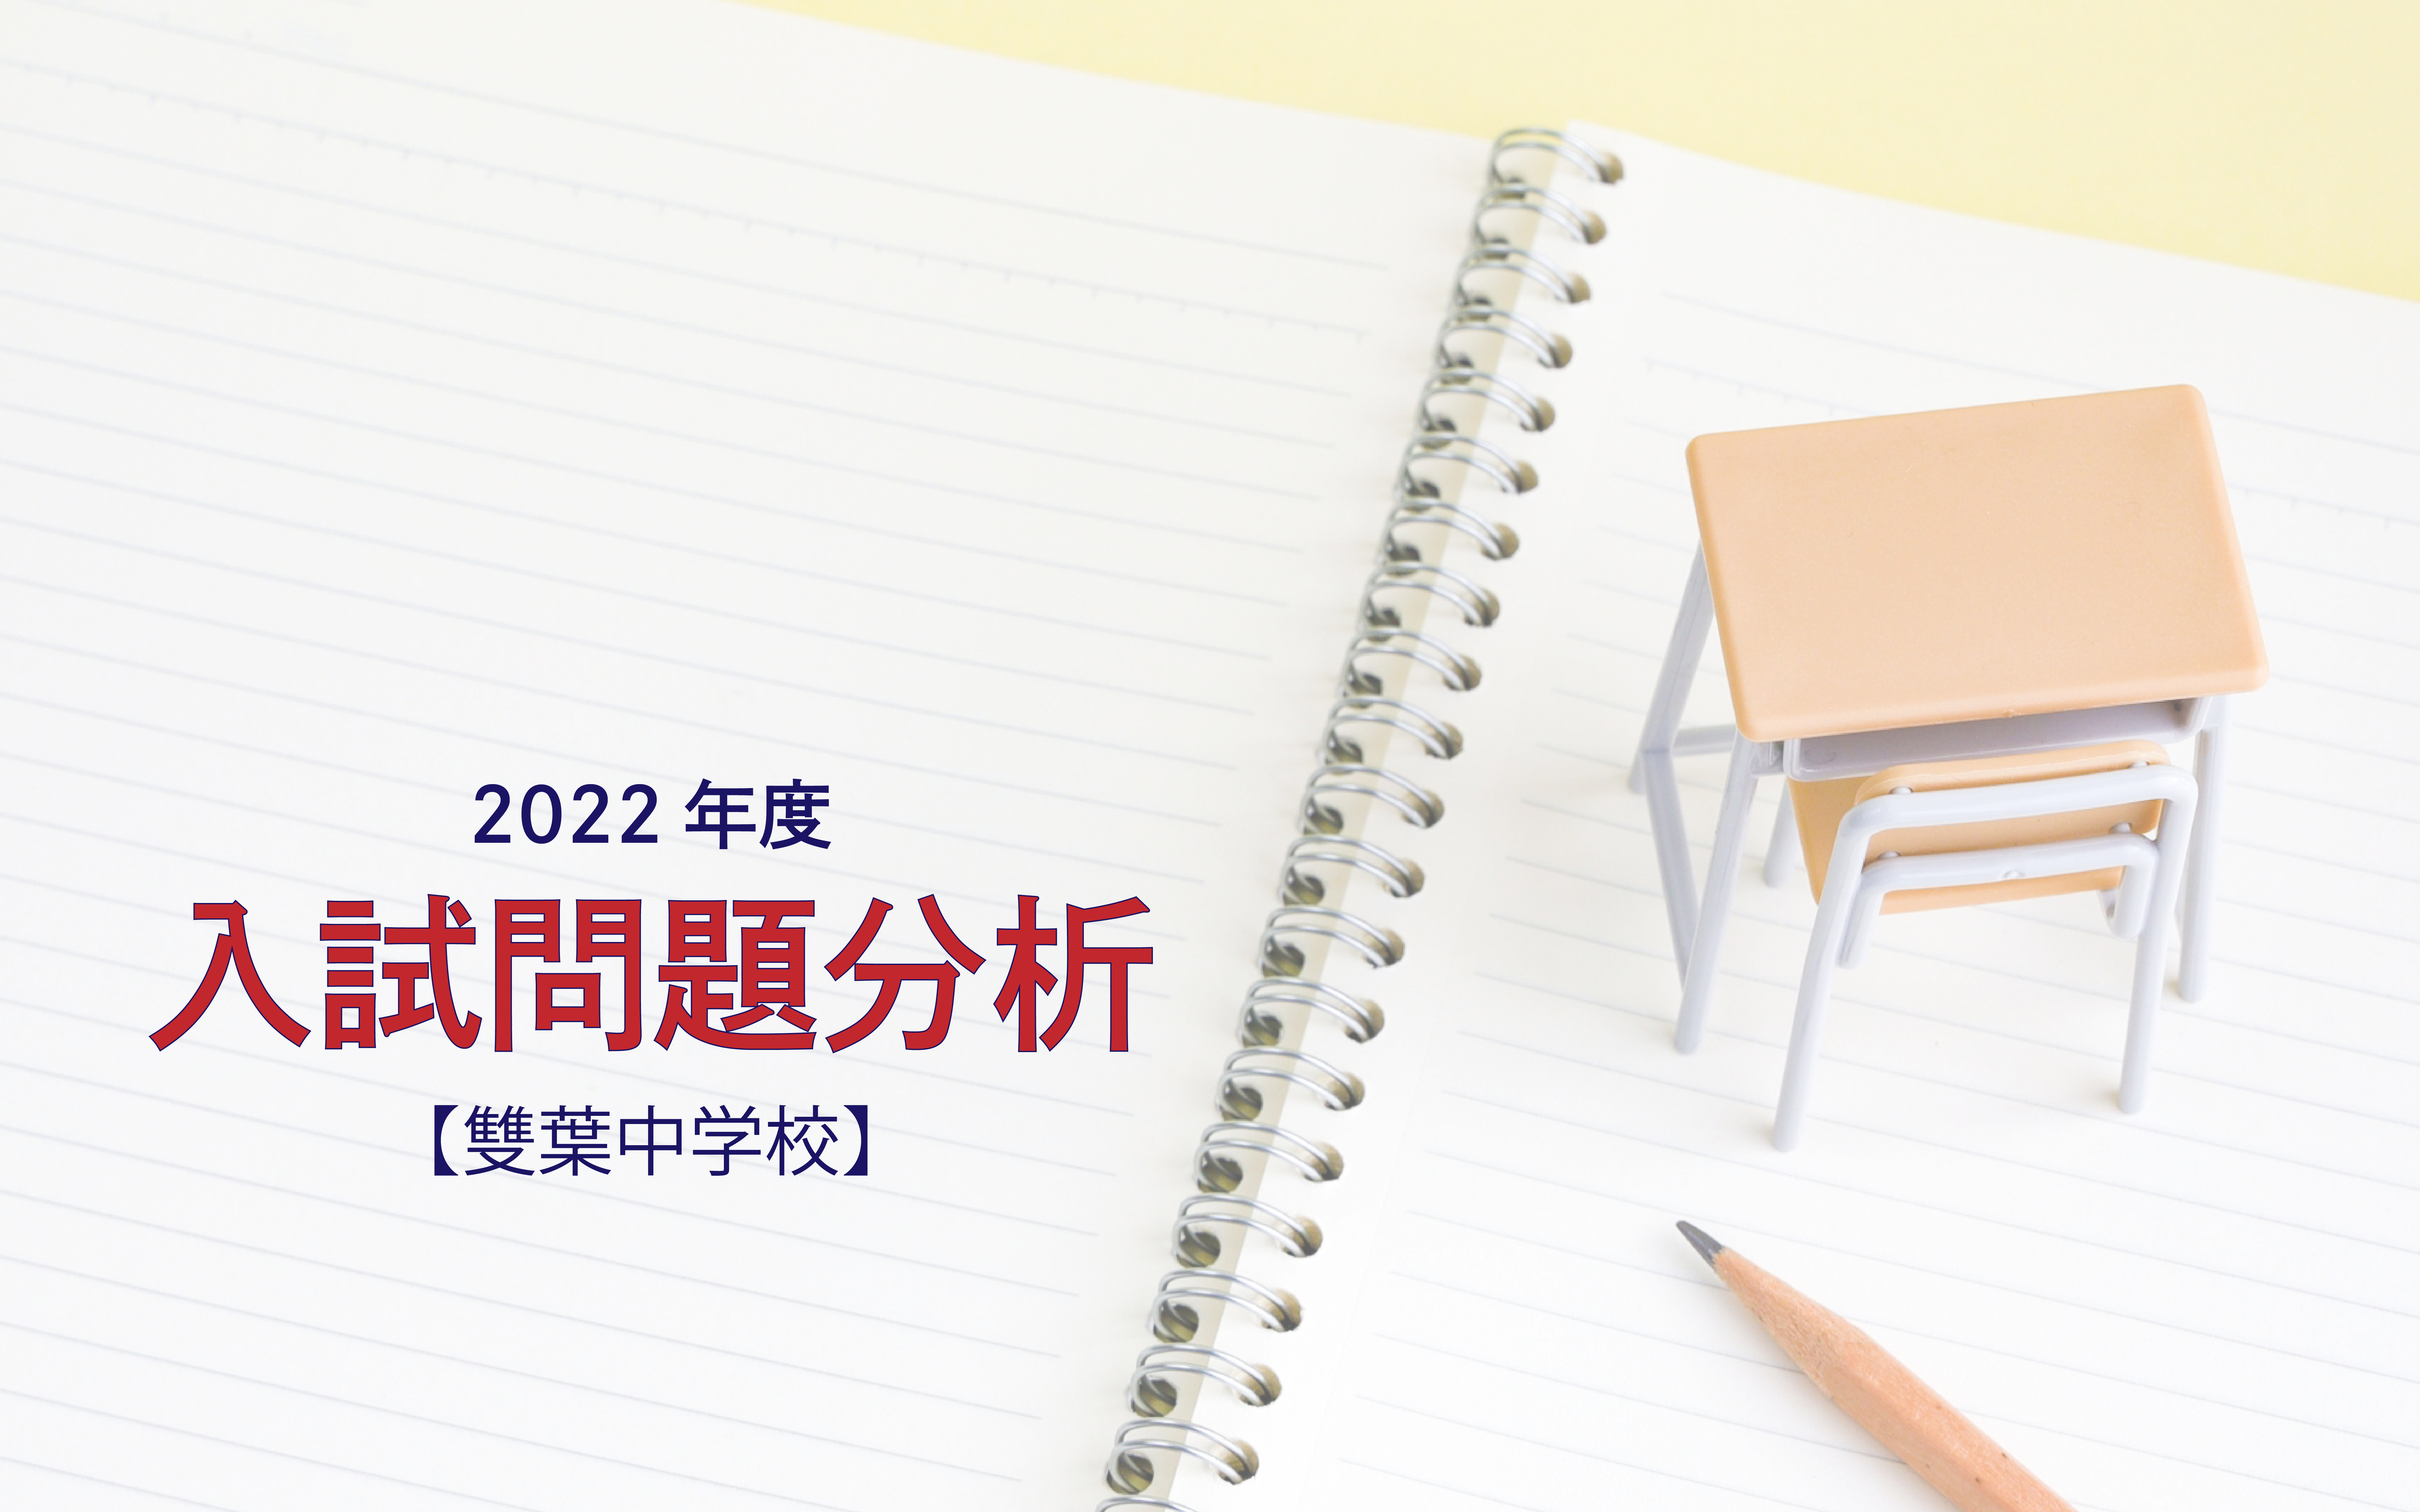 【2022年度】雙葉中学校の入試問題分析